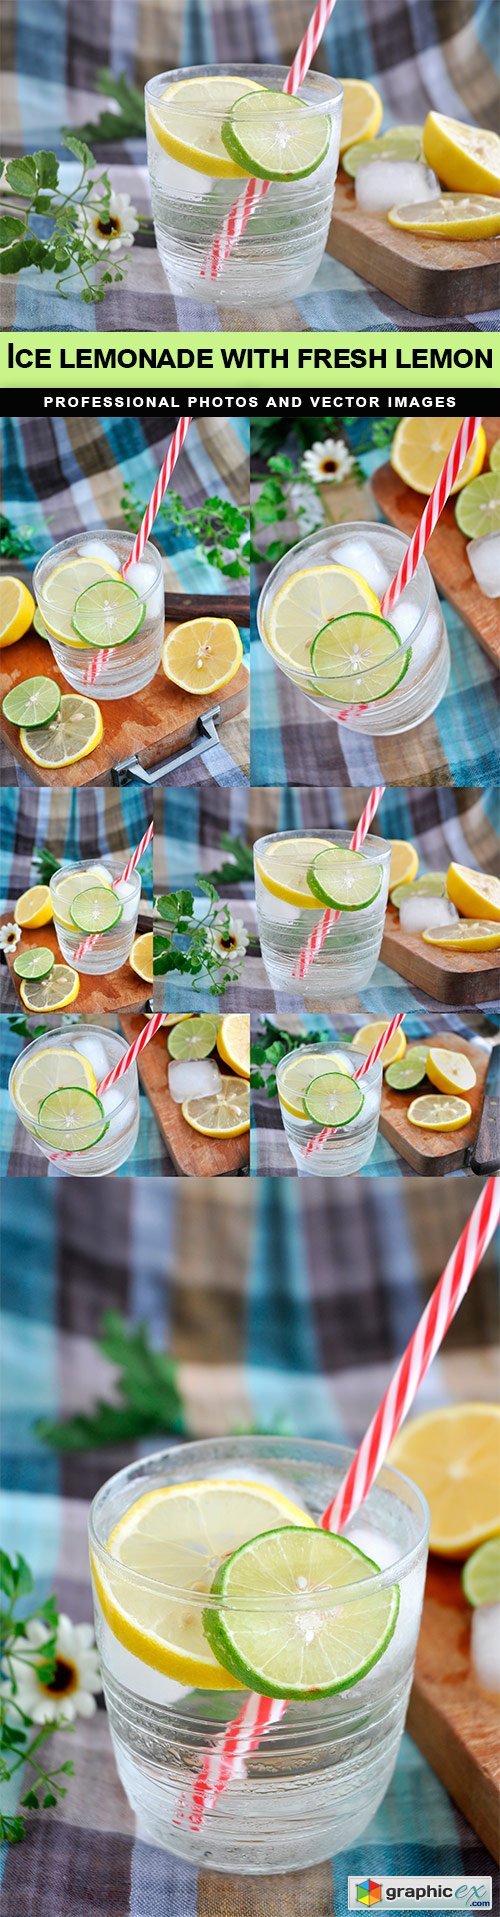 Ice lemonade with fresh lemon - 7 UHQ JPEG